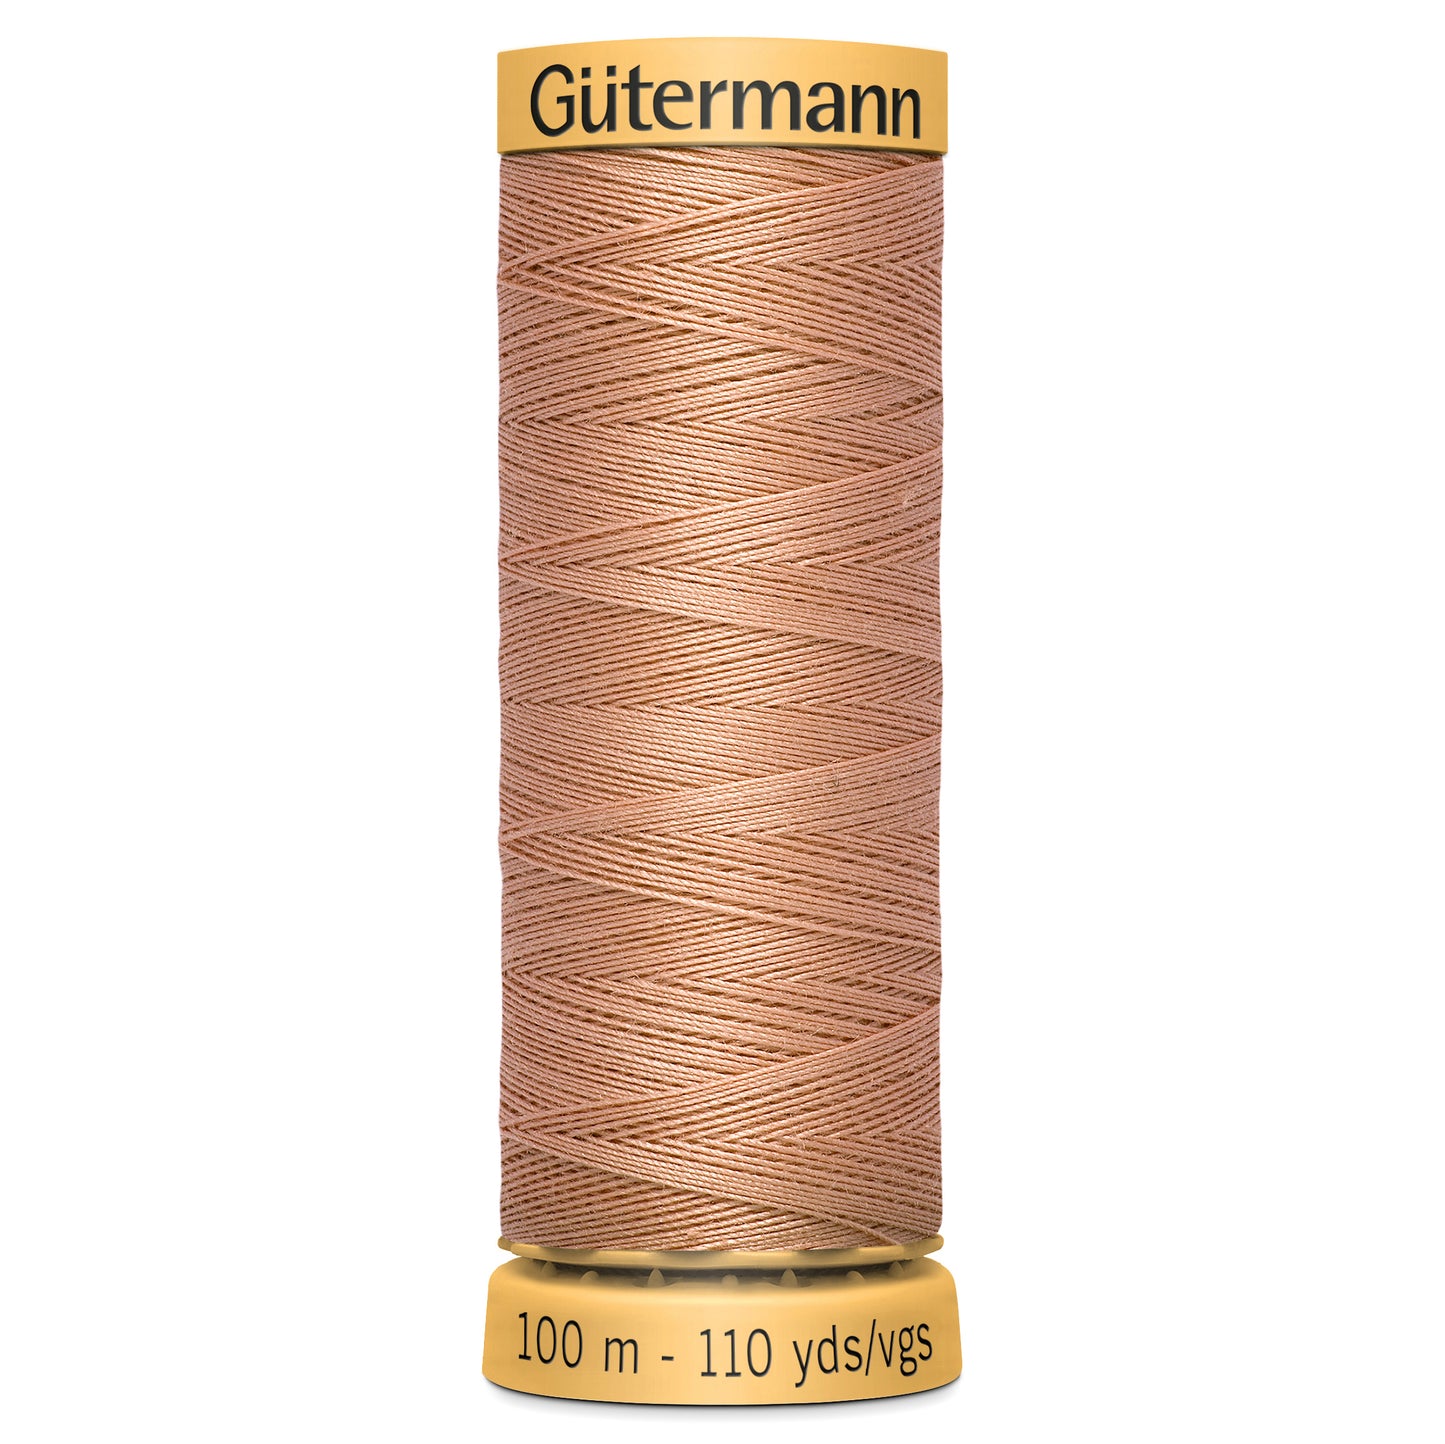 100m Gutermann 100% cotton thread